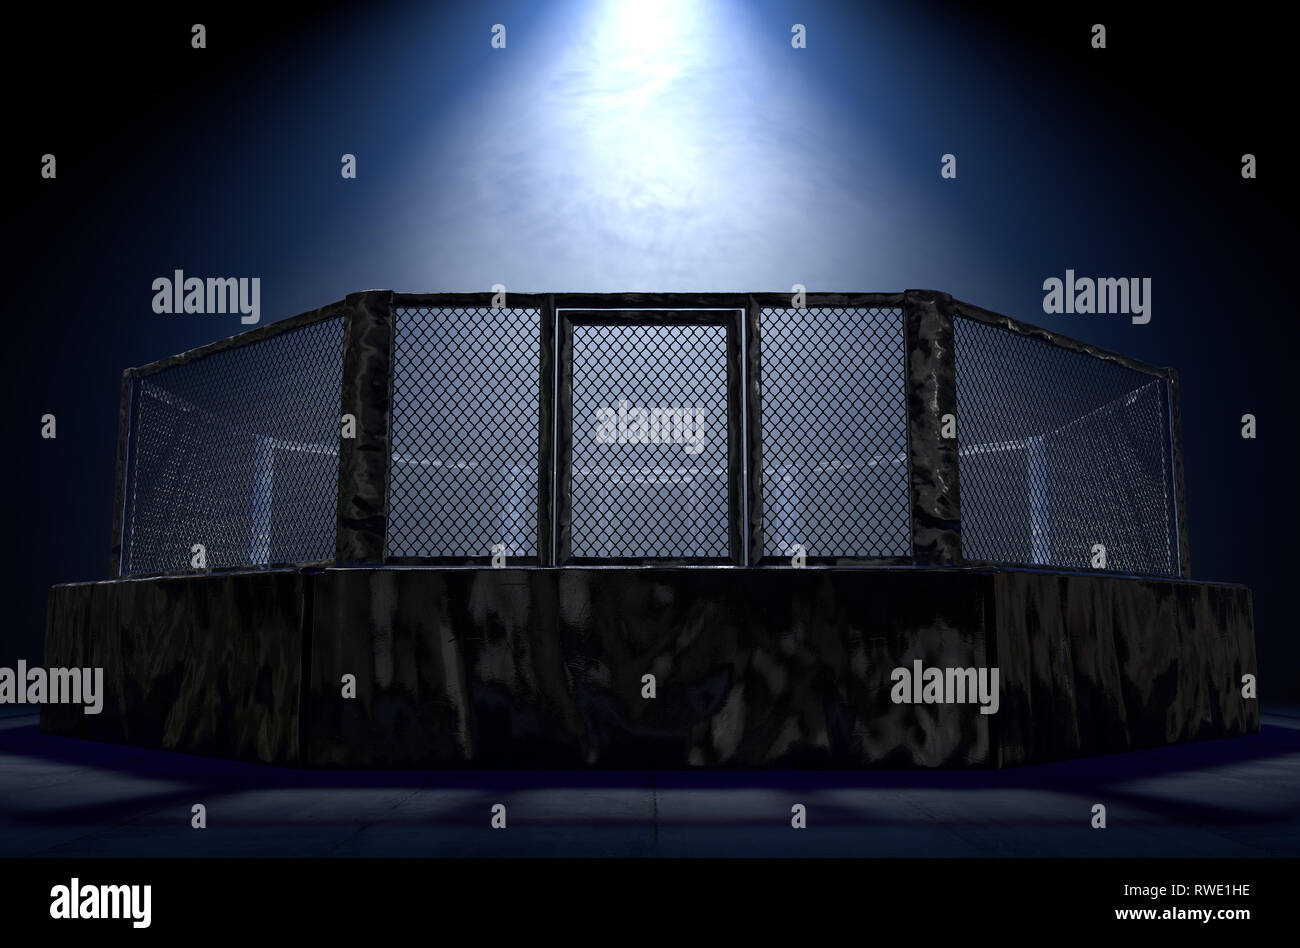 Eine 3D-Render einer MMA Käfig Kampf Arena in schwarz Polsterung spotlit durch ein einziges Licht auf einem isolierten dunklen Hintergrund - 3D-Render gekleidet Stockfoto